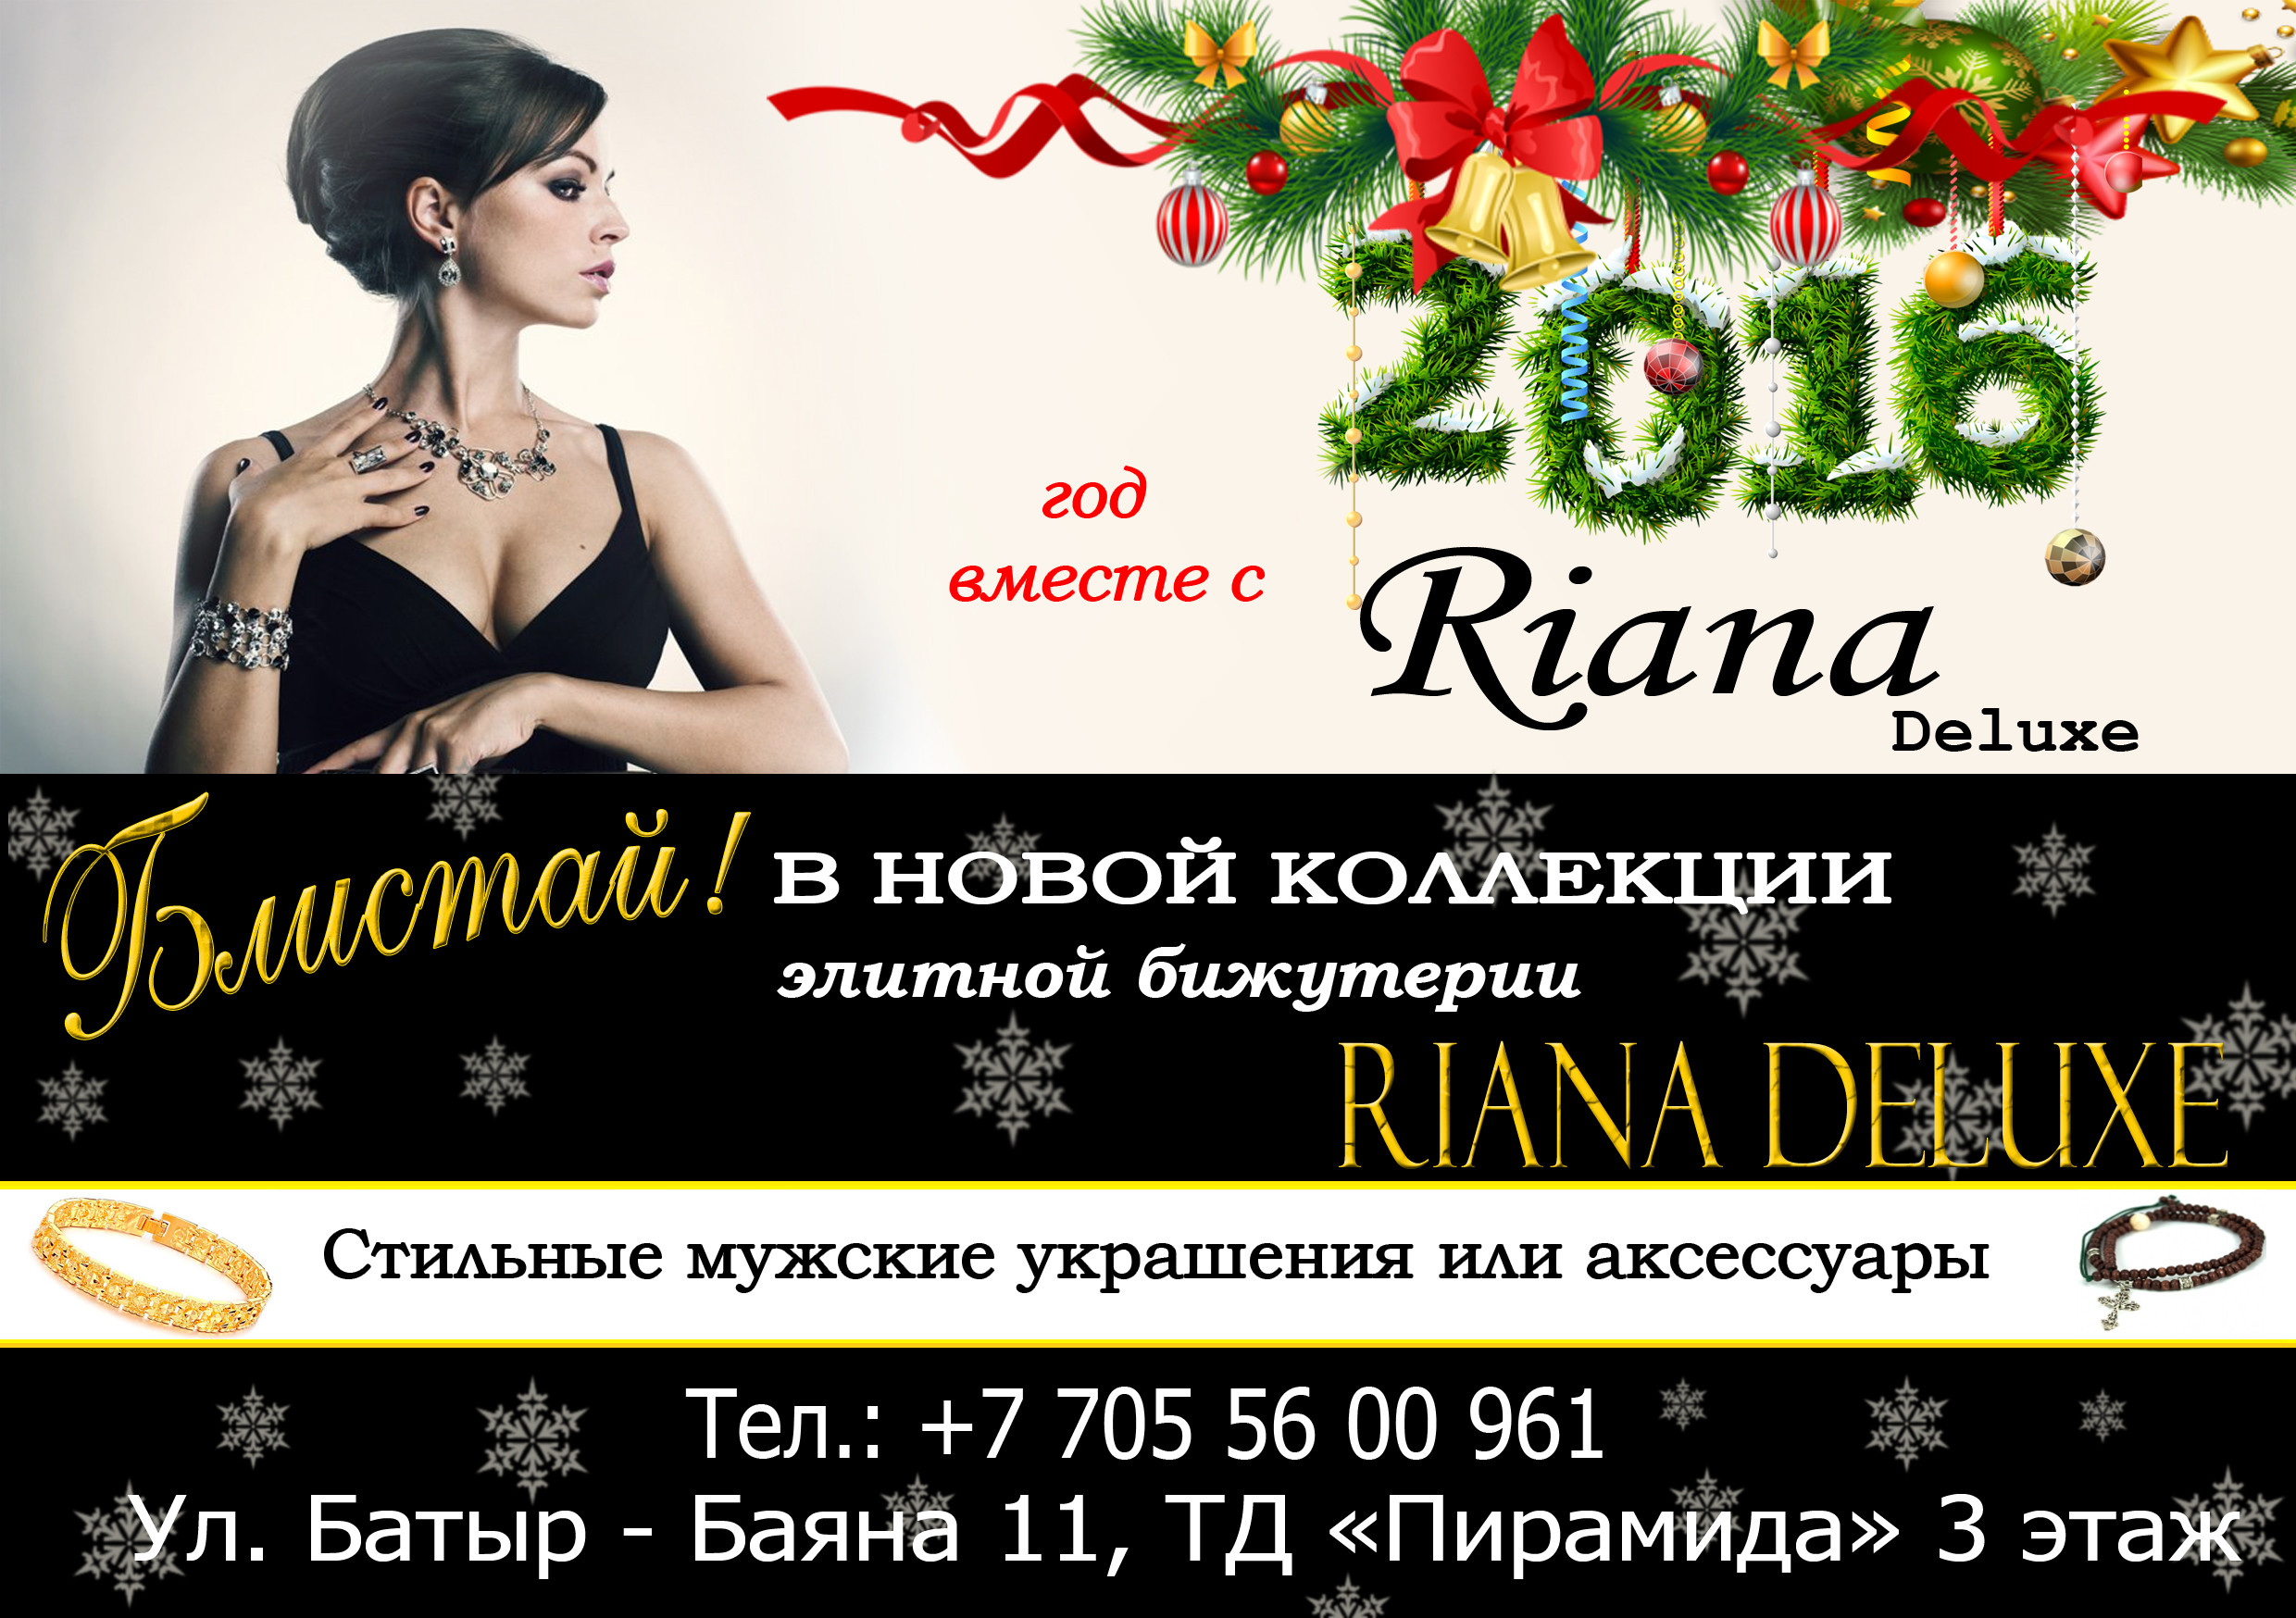 Рекламная листовка Riana Deluxe